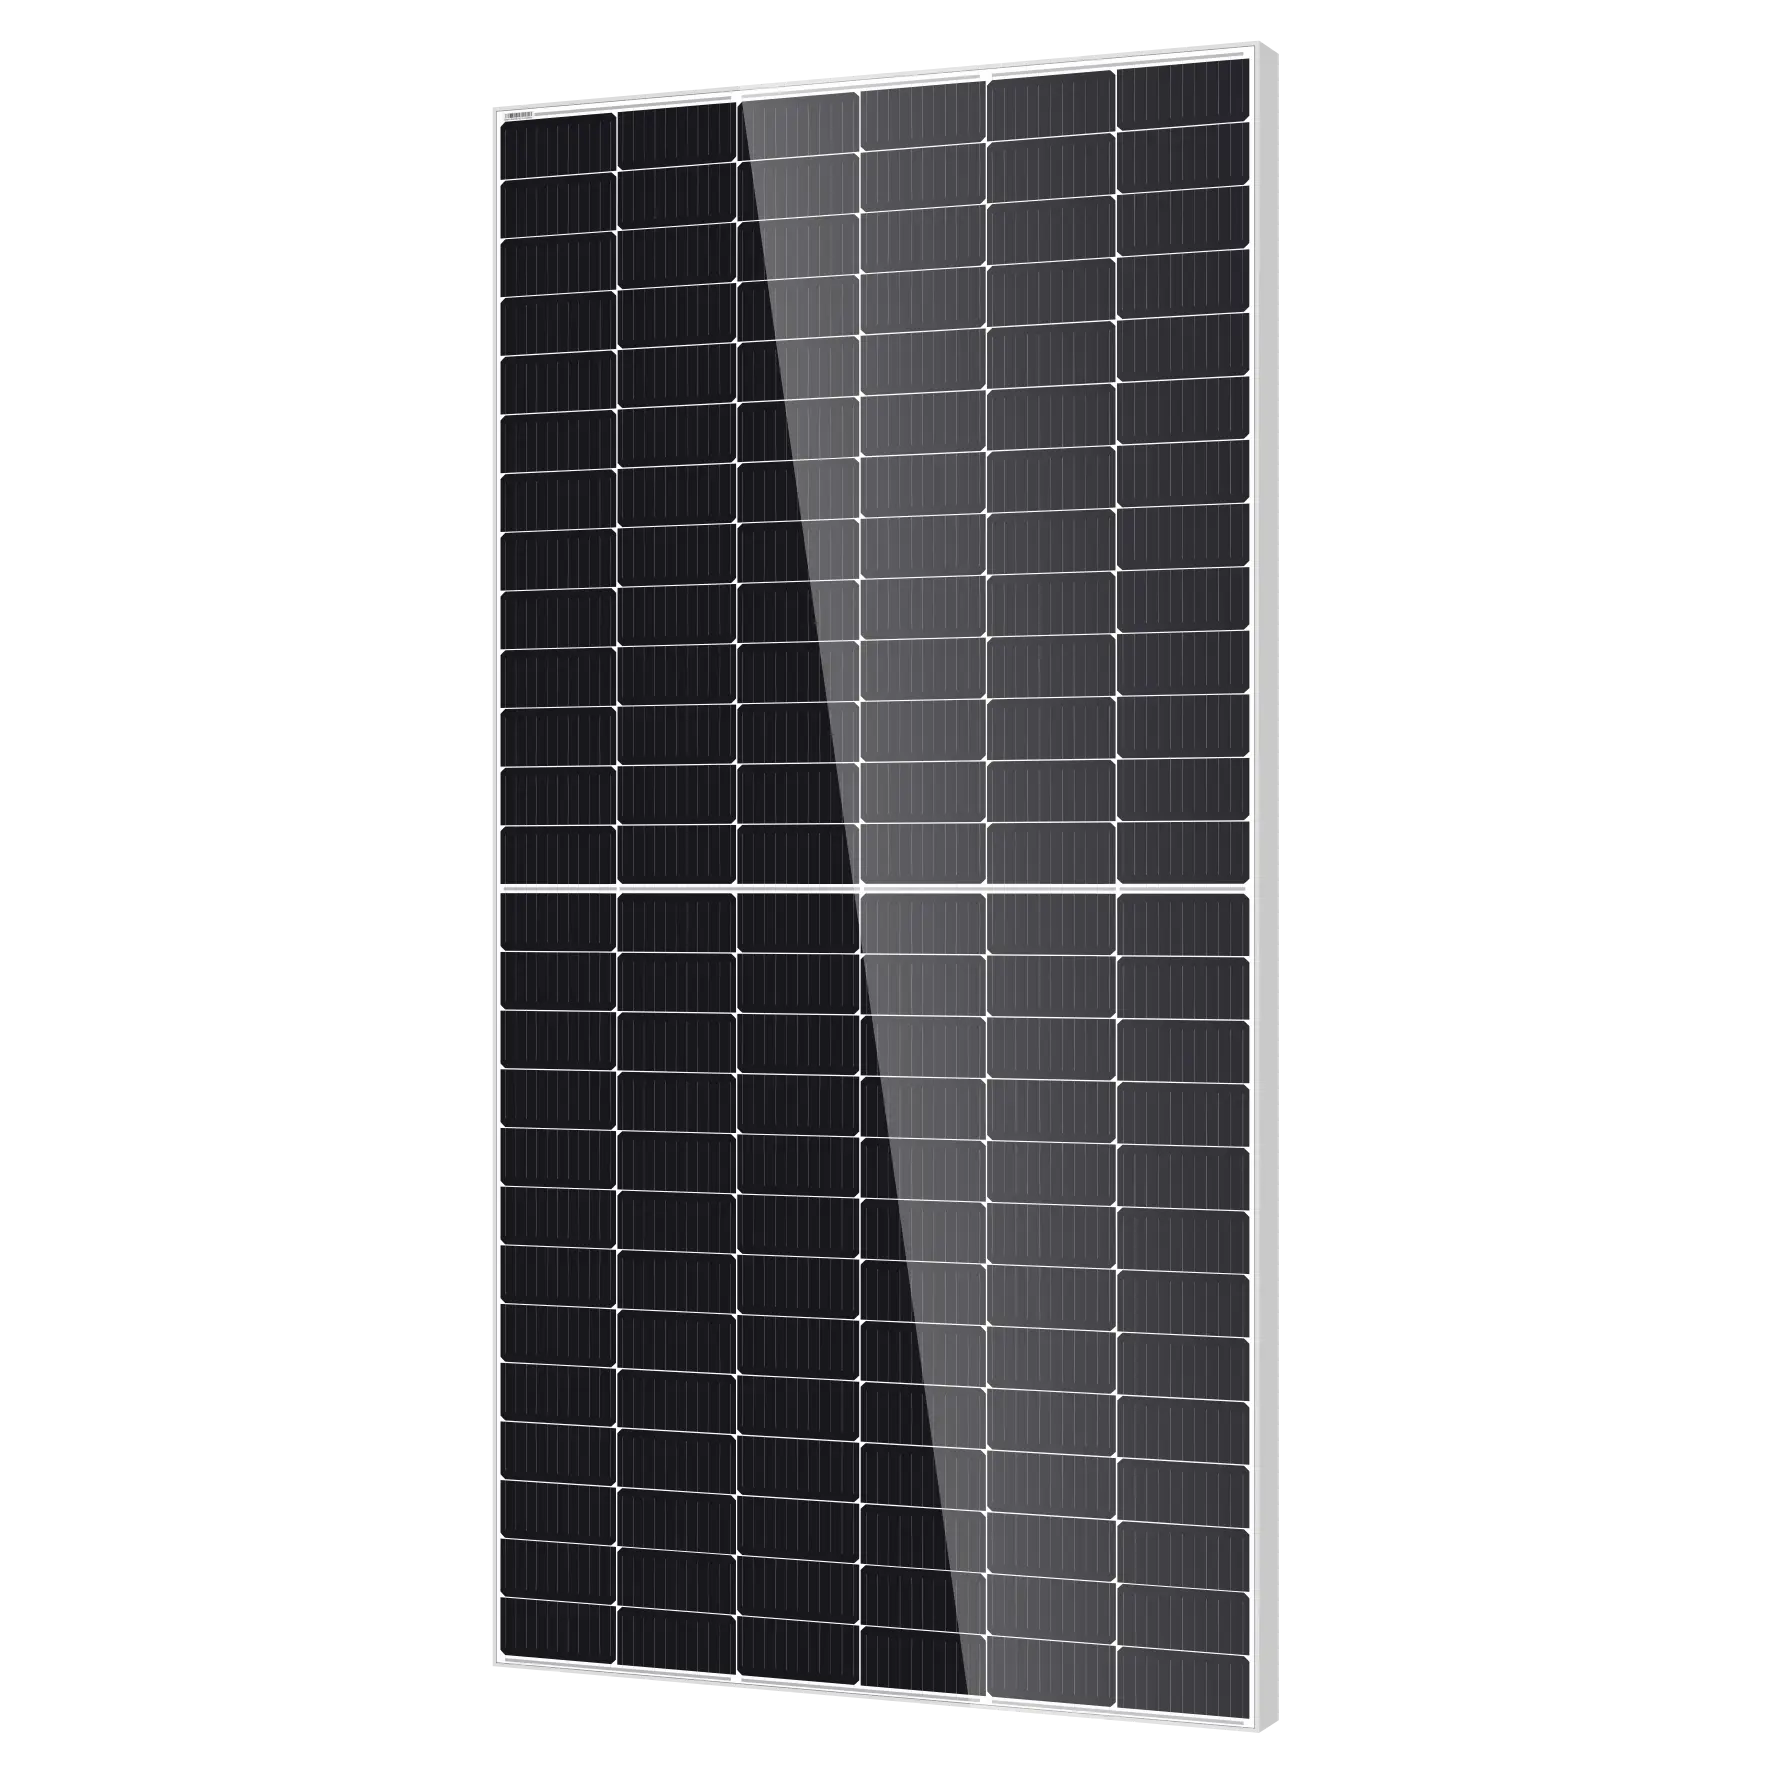 Ucuz güneş panelleri tüm siyah Mono 585 590 595 600 Watt ithalat çin'den güneş panelleri